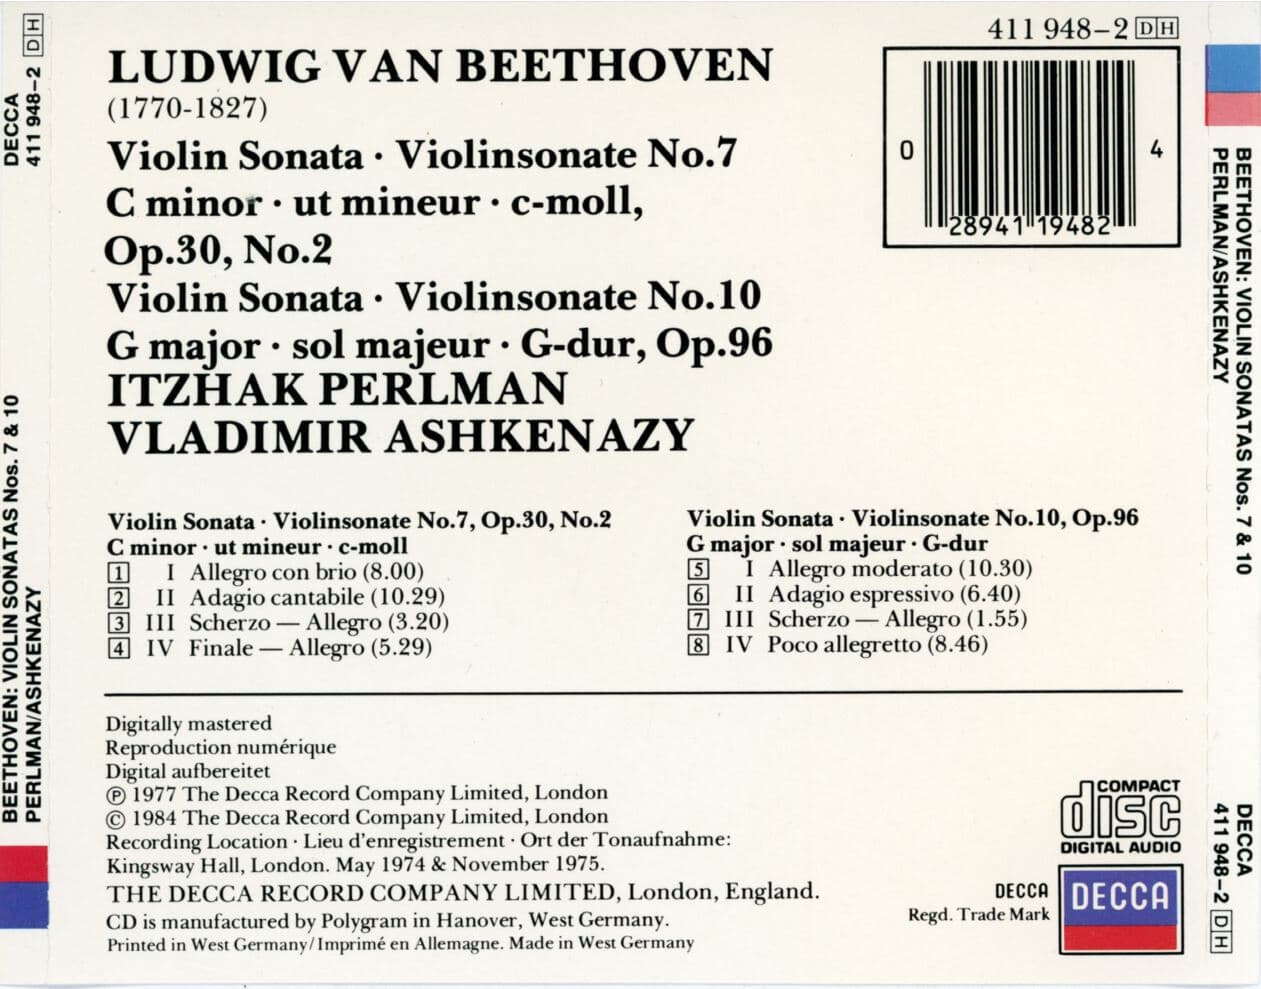 이차크 펄만,아슈케나지 - Perlman,Ashkenazy - Beethoven Violin Sonatas Violinsonaten No.7.. [독일발매]